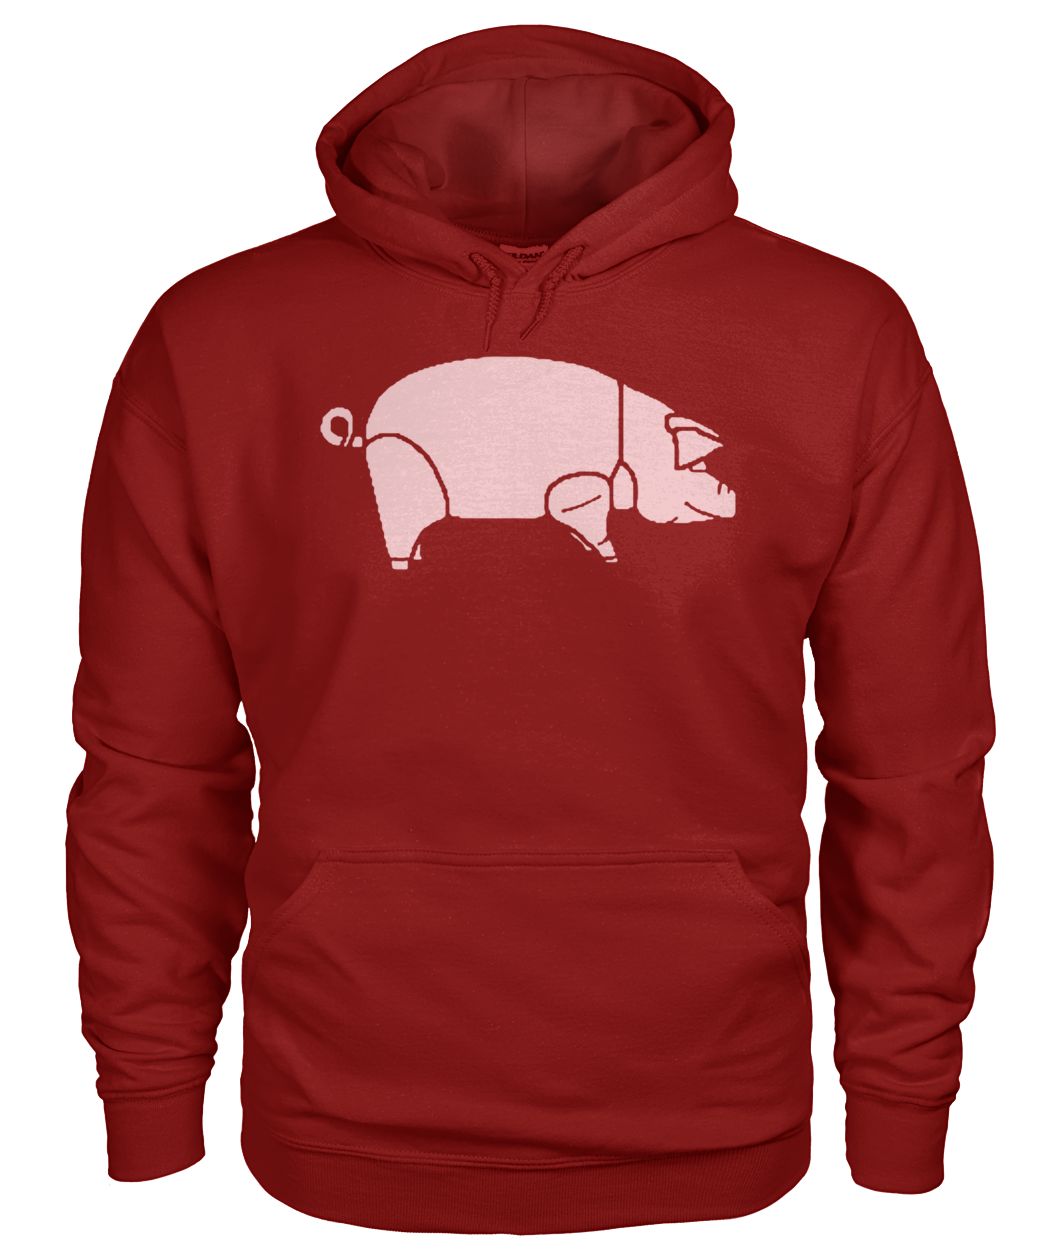 Pig as worn by david gilmour pink floyd gildan hoodie